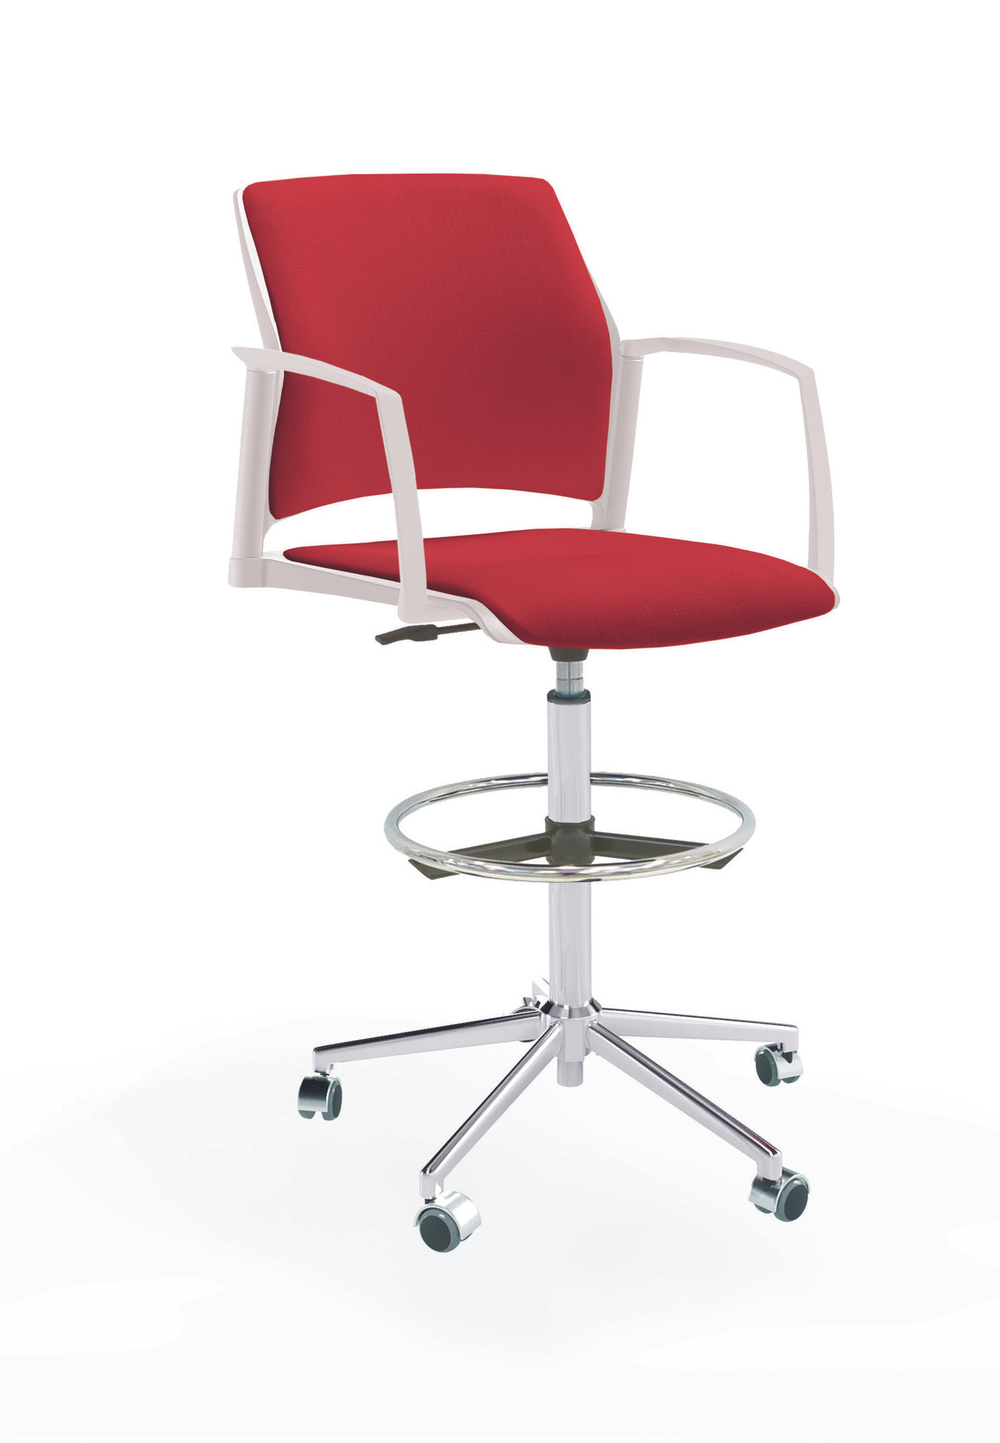 Кресло Rewind каркас хром, пластик белый, база стальная хромированная, с закрытыми подлокотниками, сиденье и спинка красные